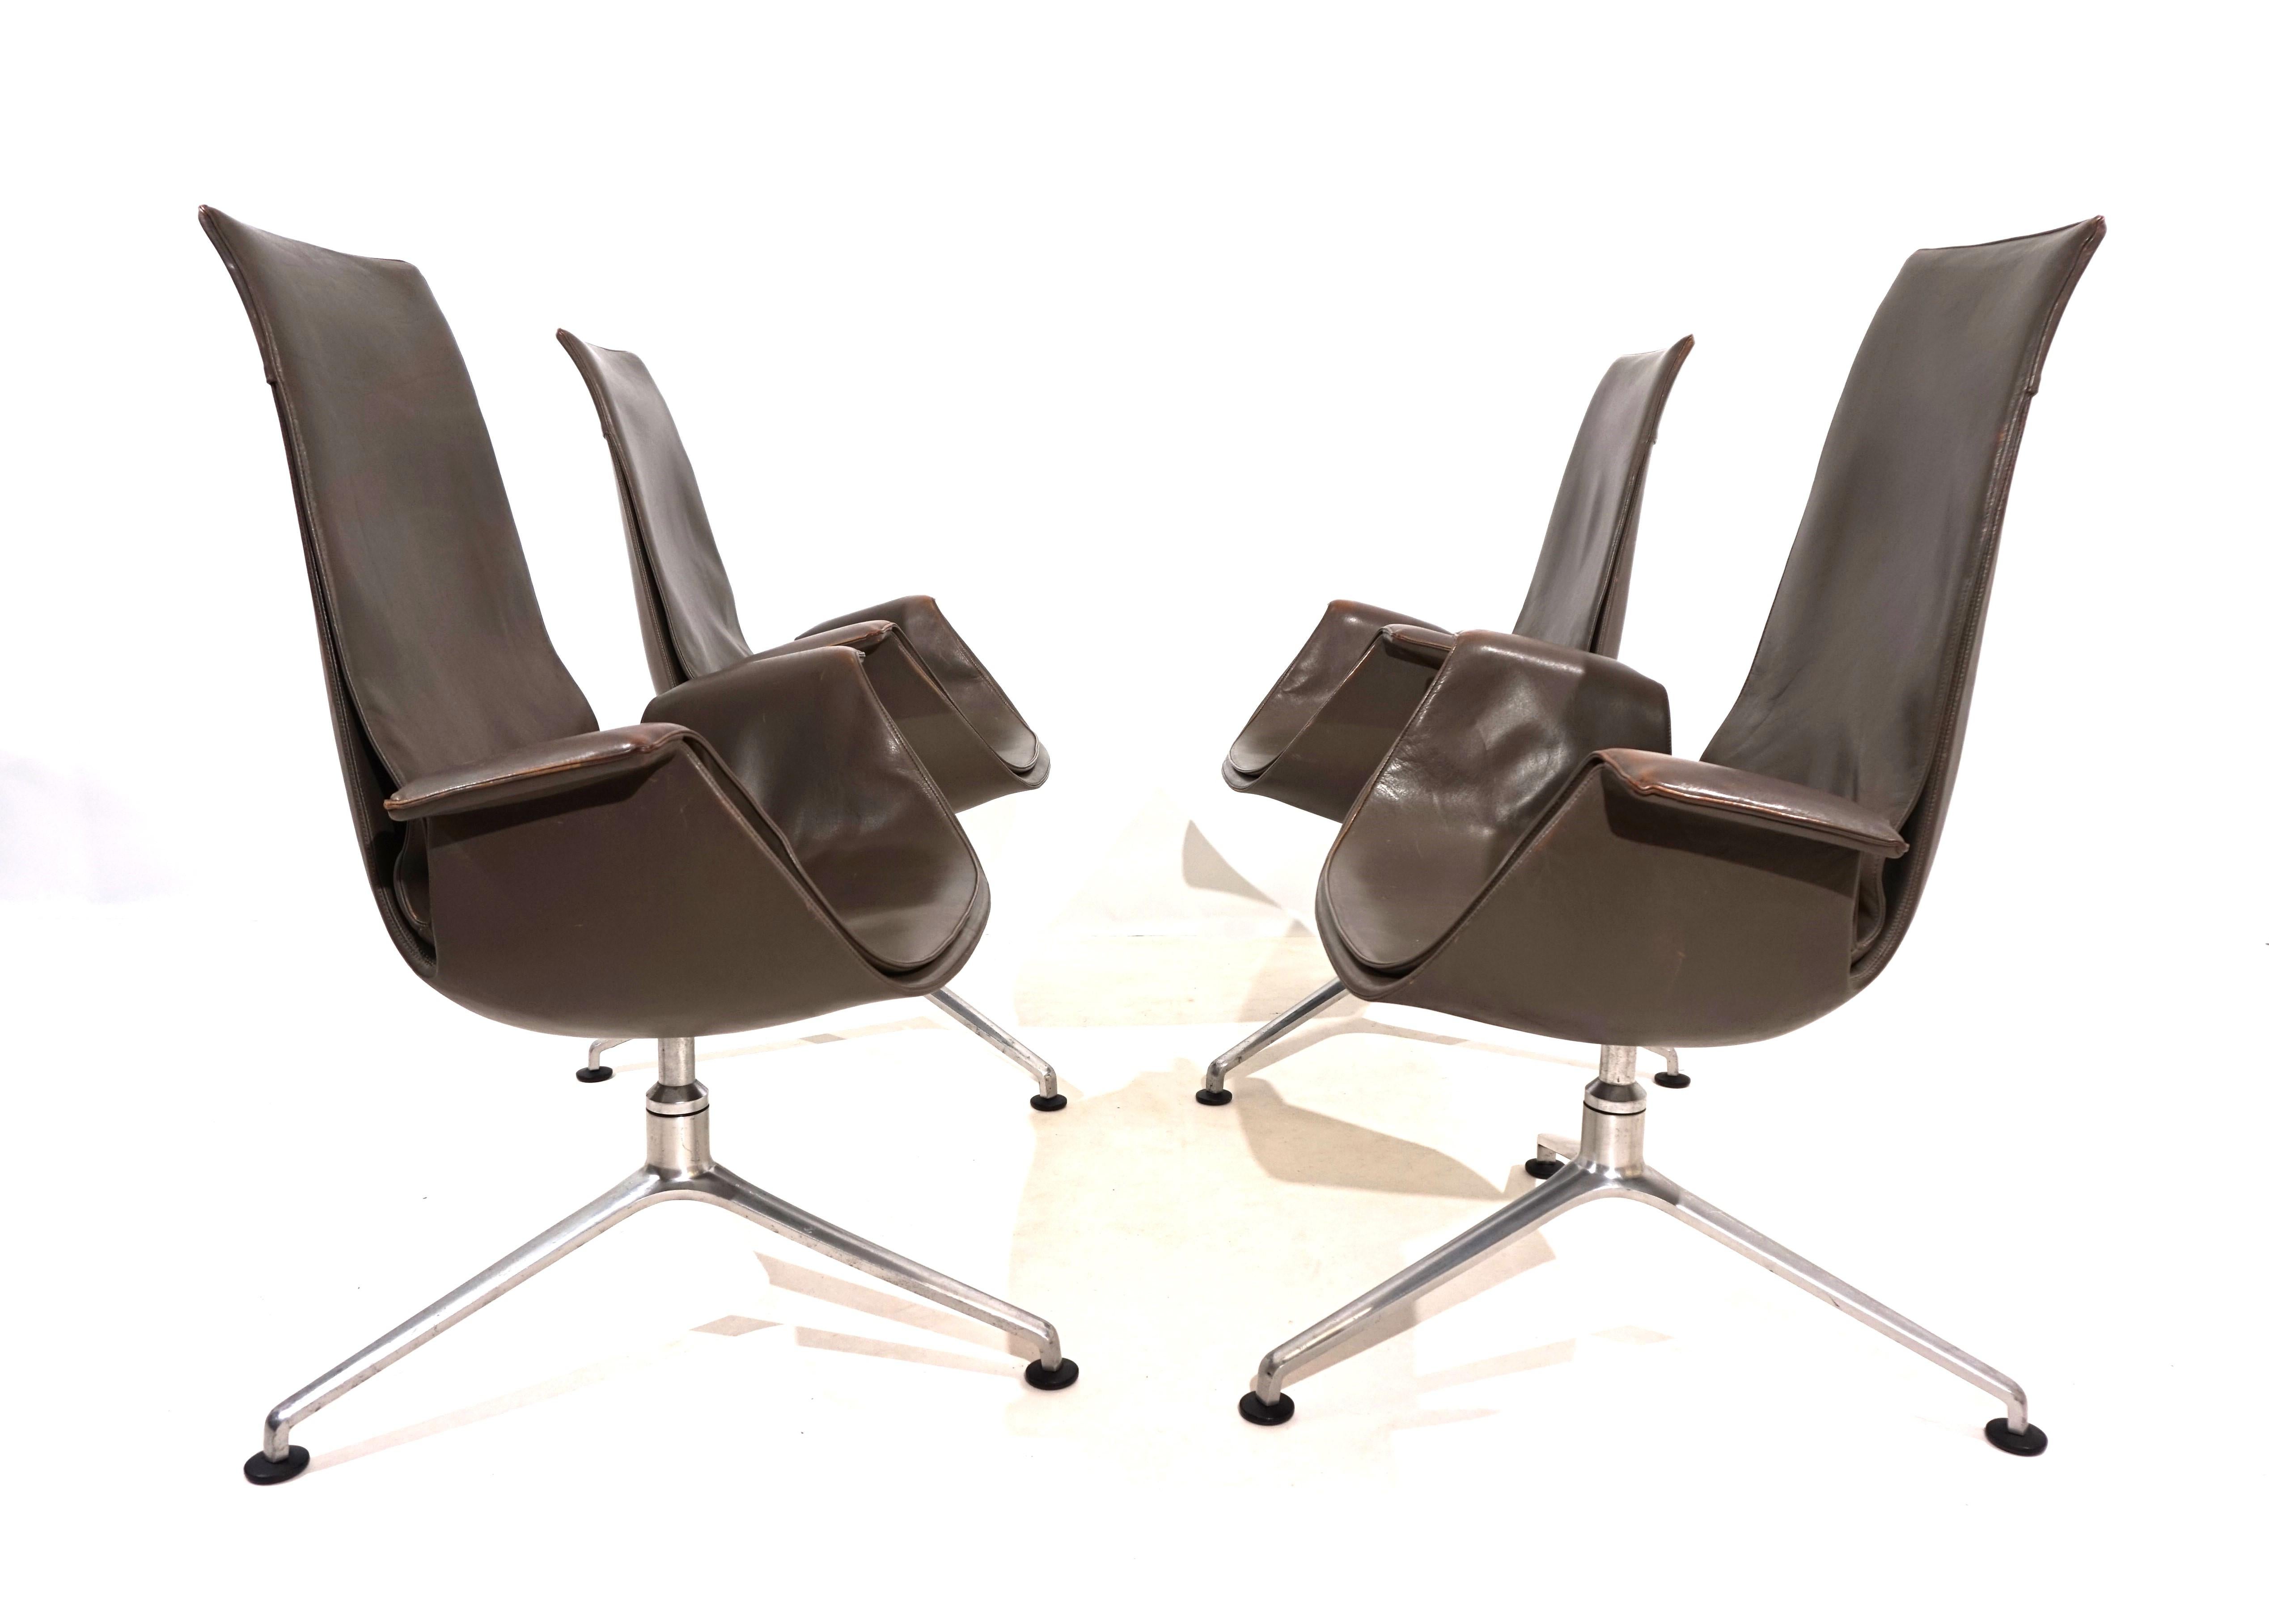 Der Satz von 4 eleganten FK 6725 Bird Stühlen mit hohen Rückenlehnen ist in sehr gutem Zustand. Das taupefarbene Leder der Stühle weist kaum Gebrauchsspuren auf und hat an den Armlehnen eine charmante Patina. Bei einem Stuhl ist das Leder an der